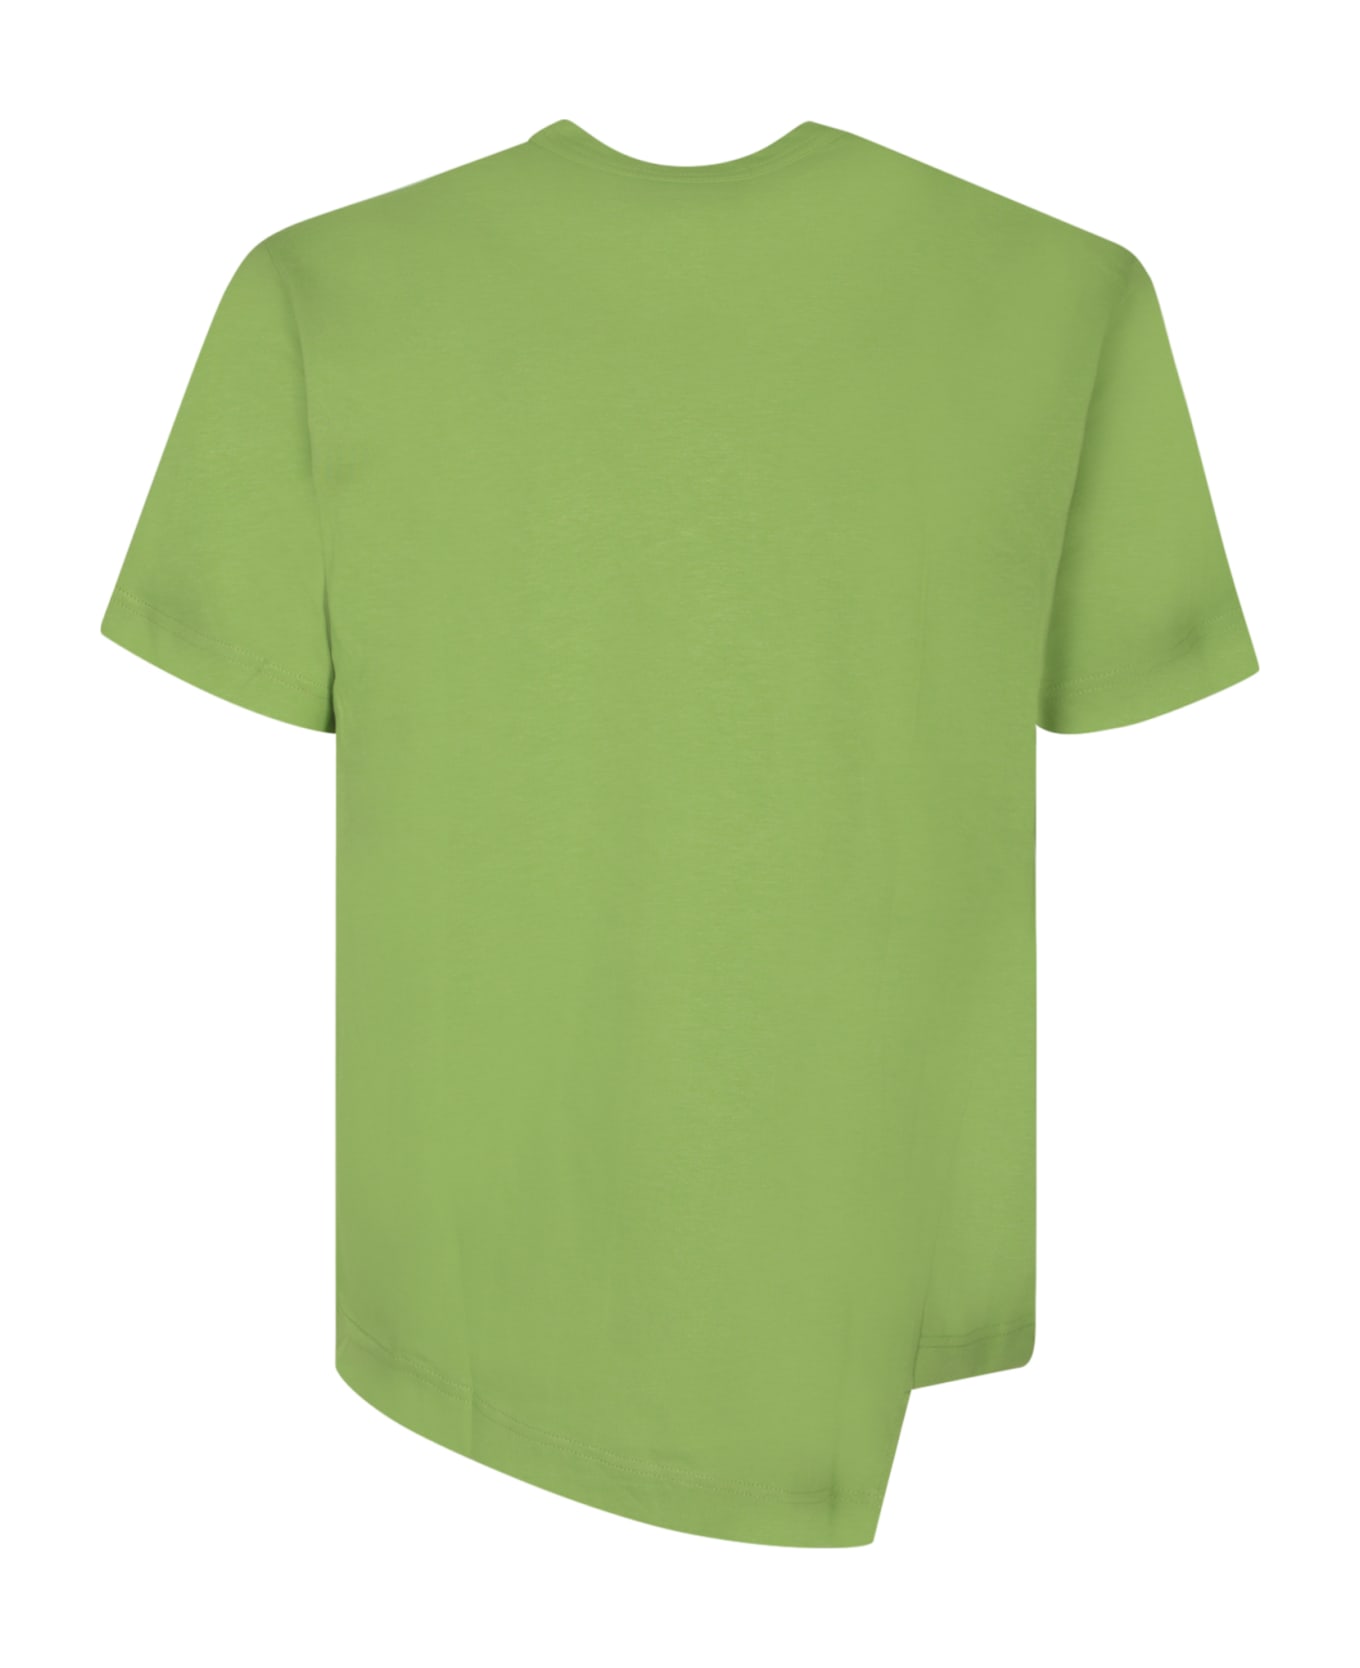 Comme des Garçons Shirt Asymmetric Green T-shirt - Green